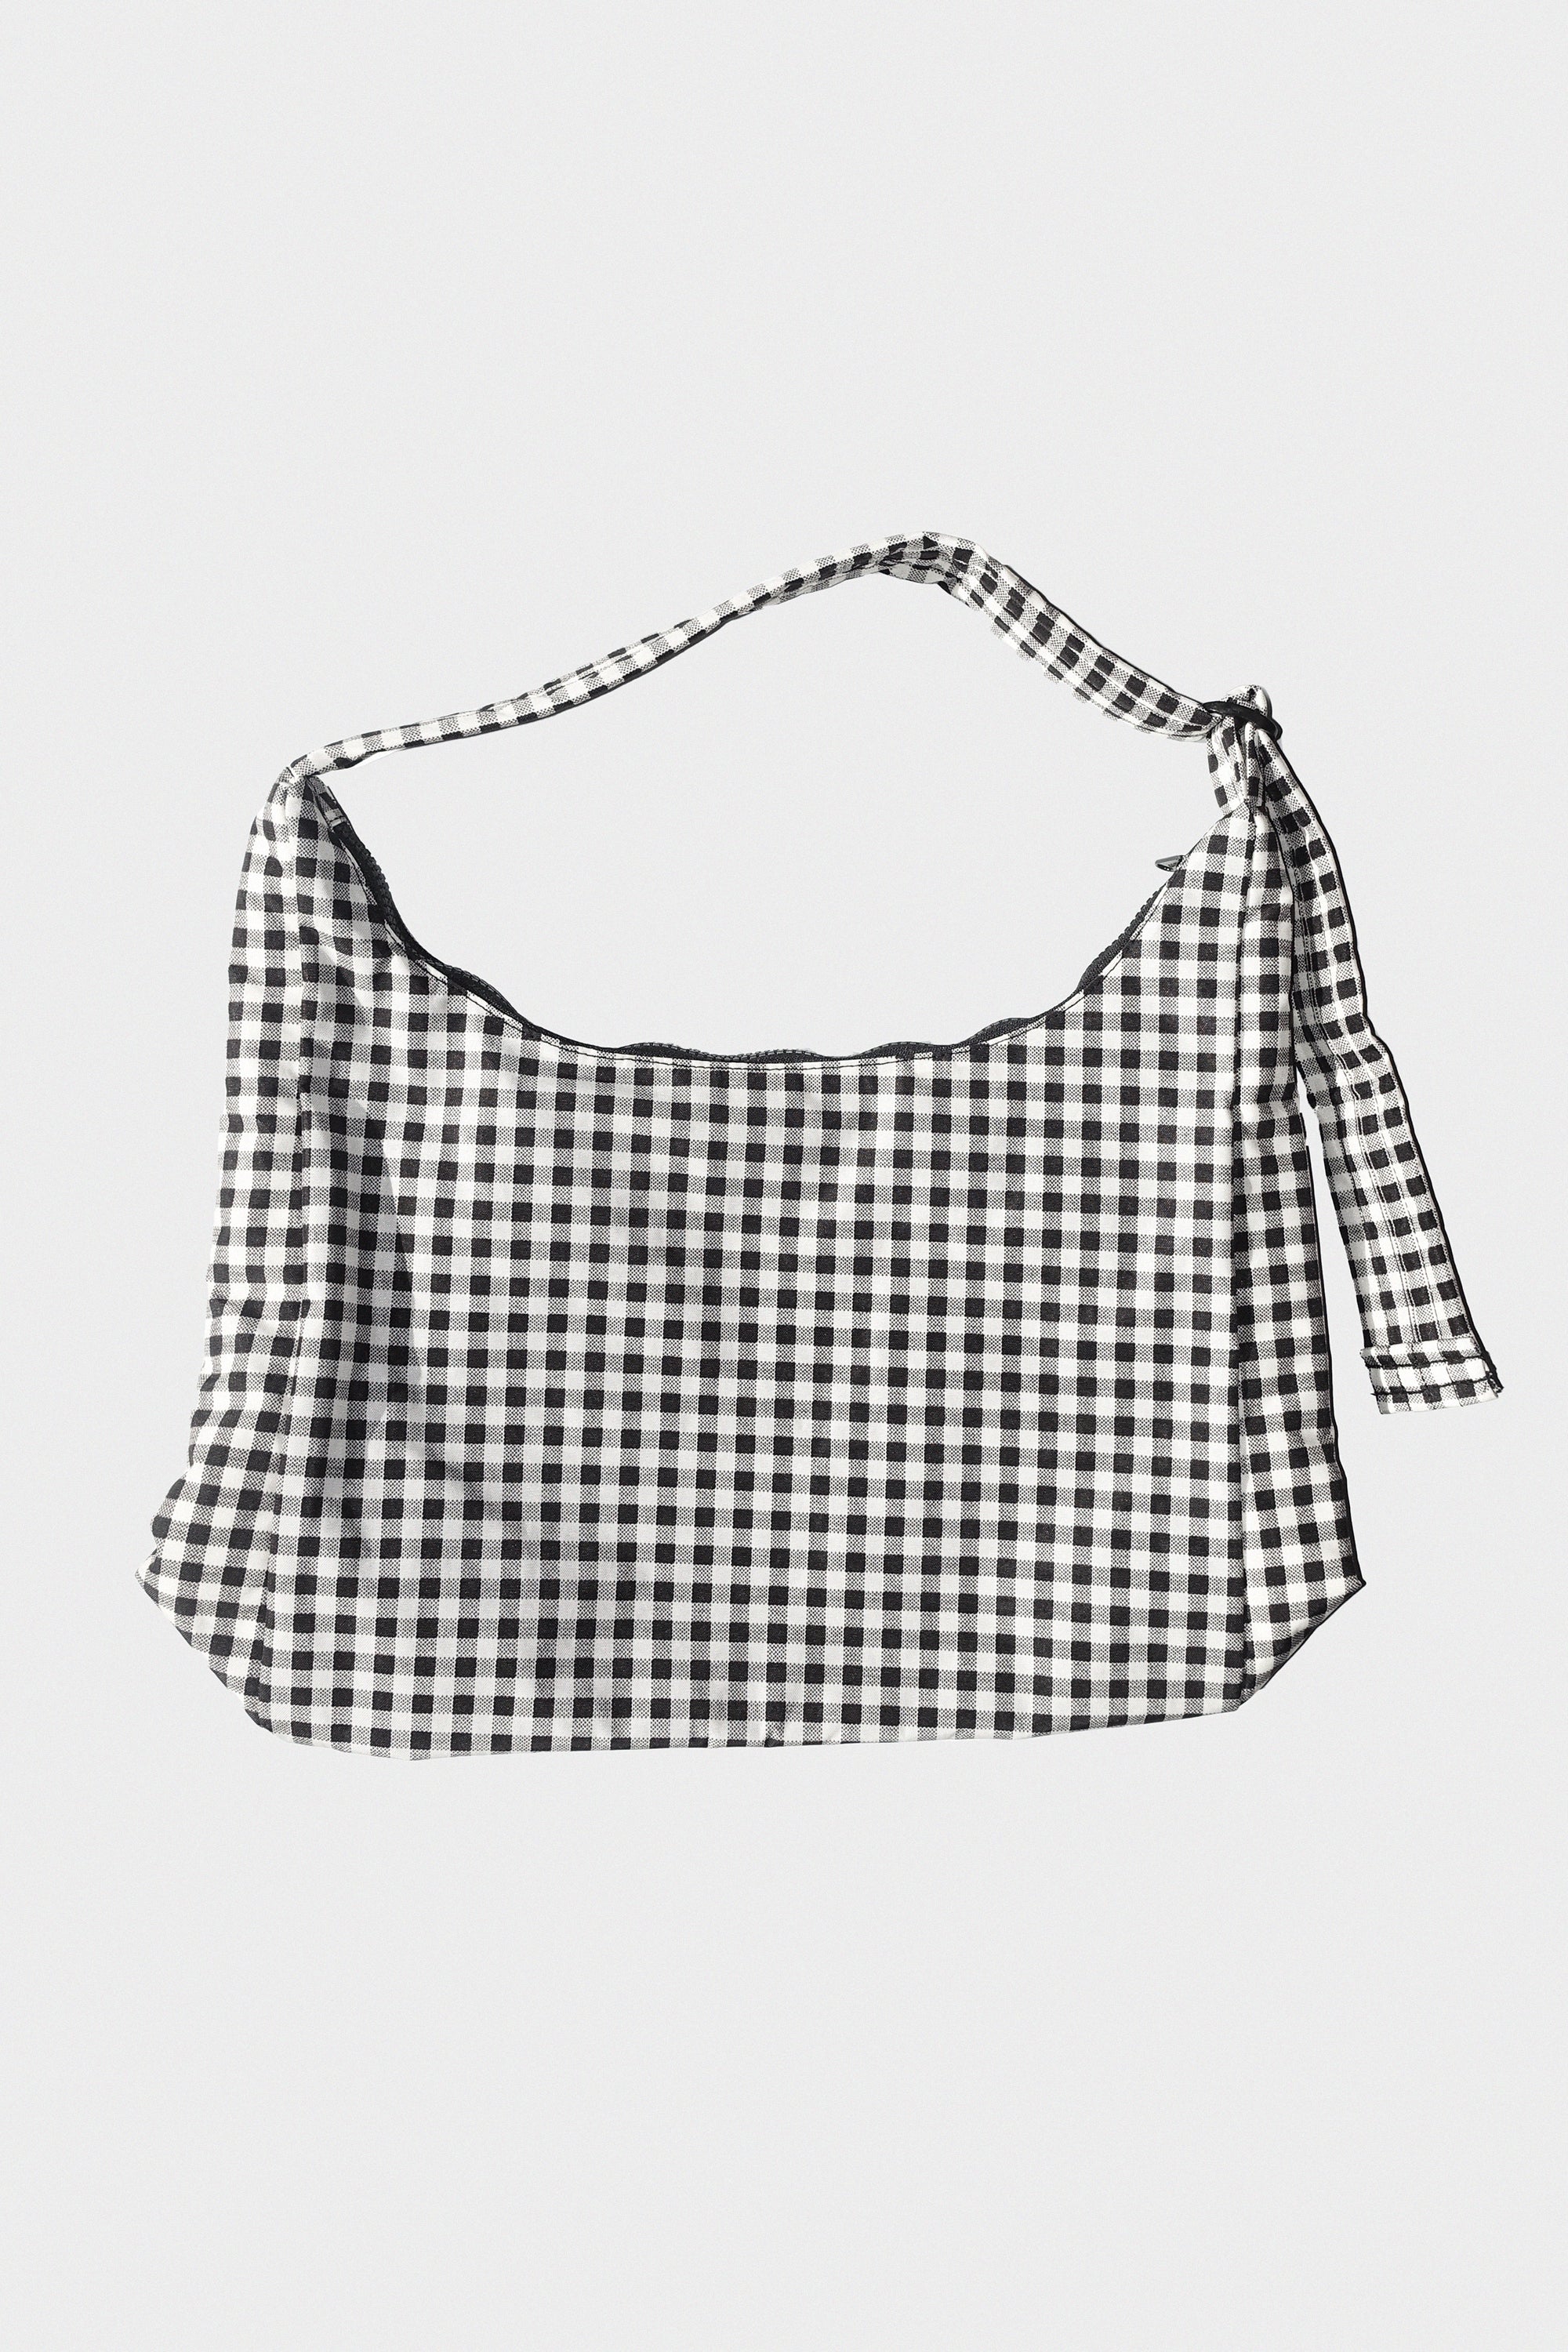 Nylon Shoulder Bag in Black & White Gingham